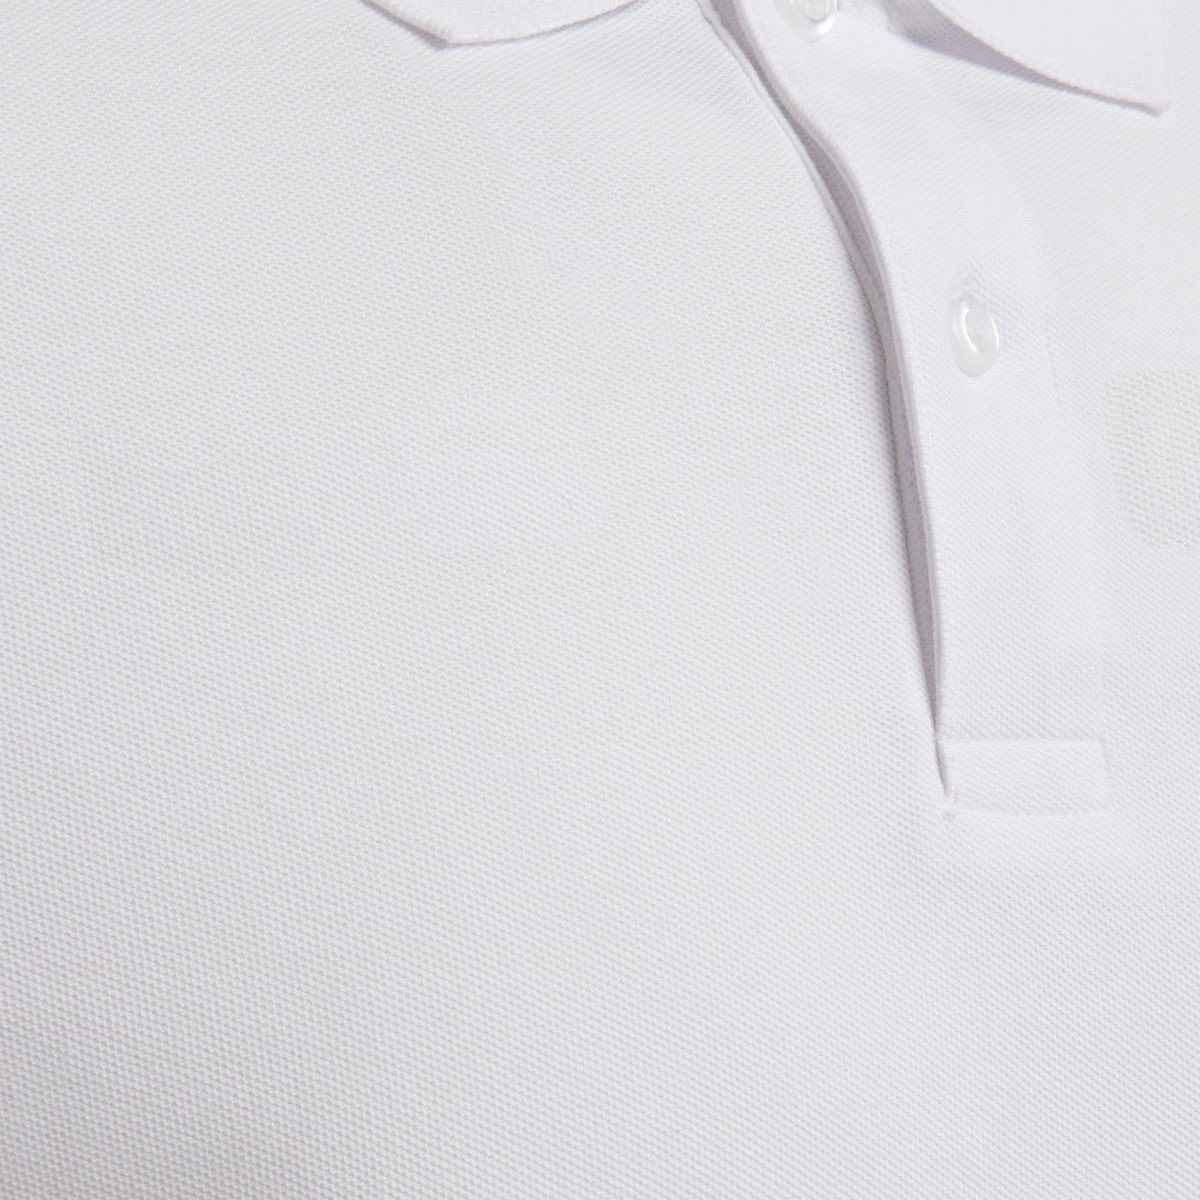 Kinder White Poloshirts 9001 - HMLGOMover POLO T-Shirt hummel COTTON